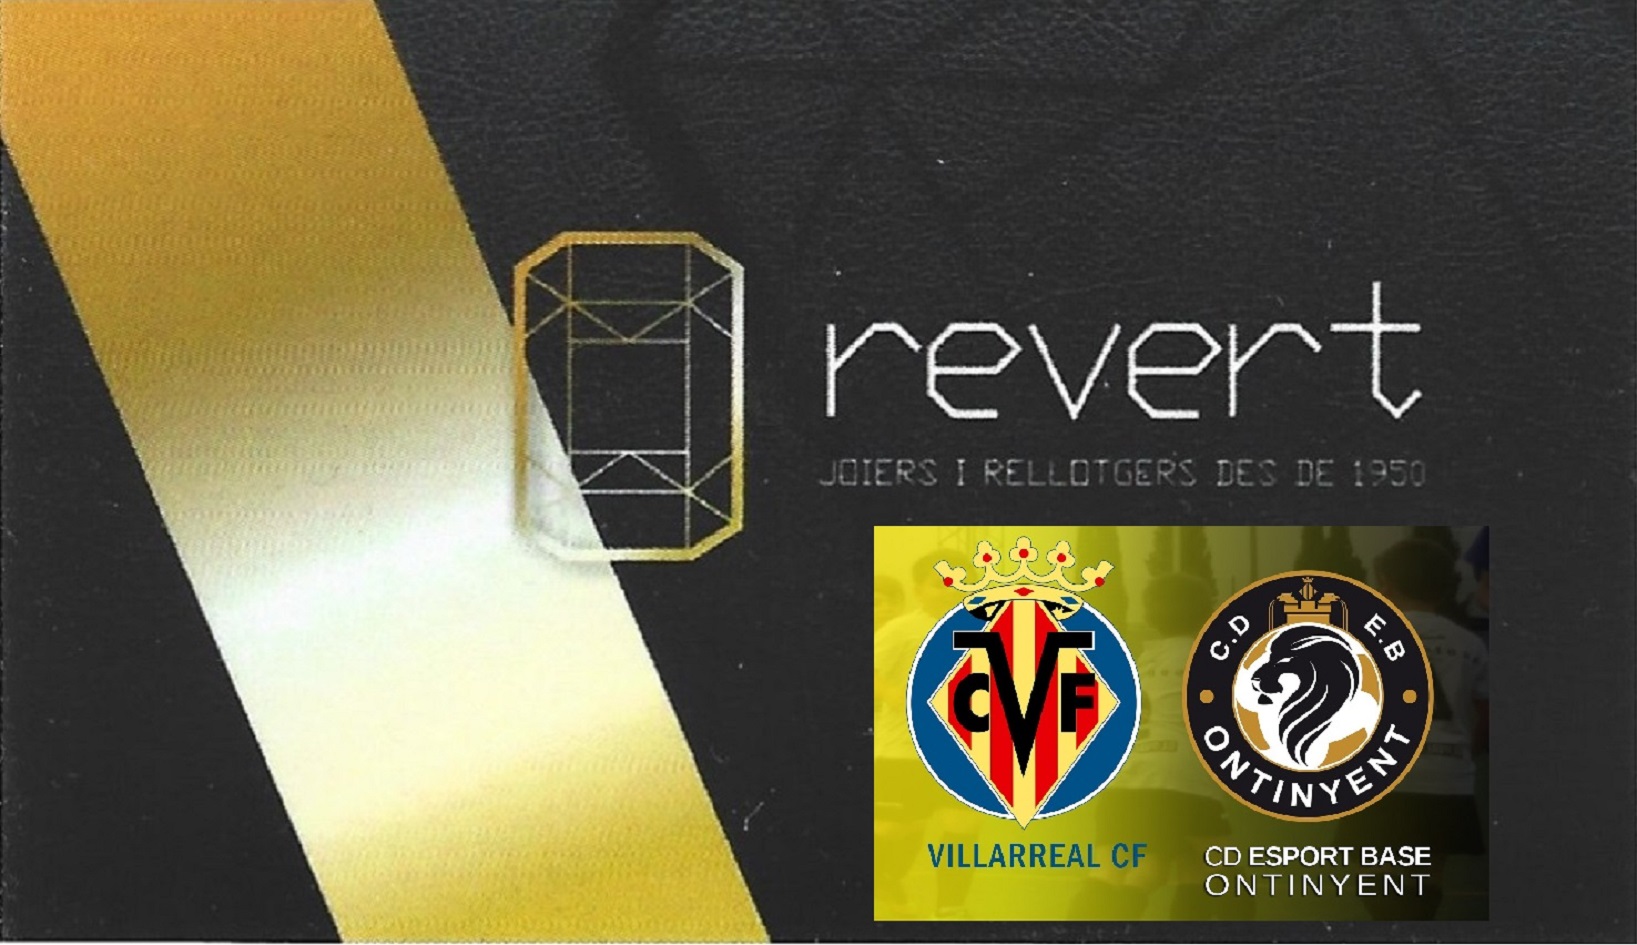 La Joieria Revert porta els equips ideals de la jornada